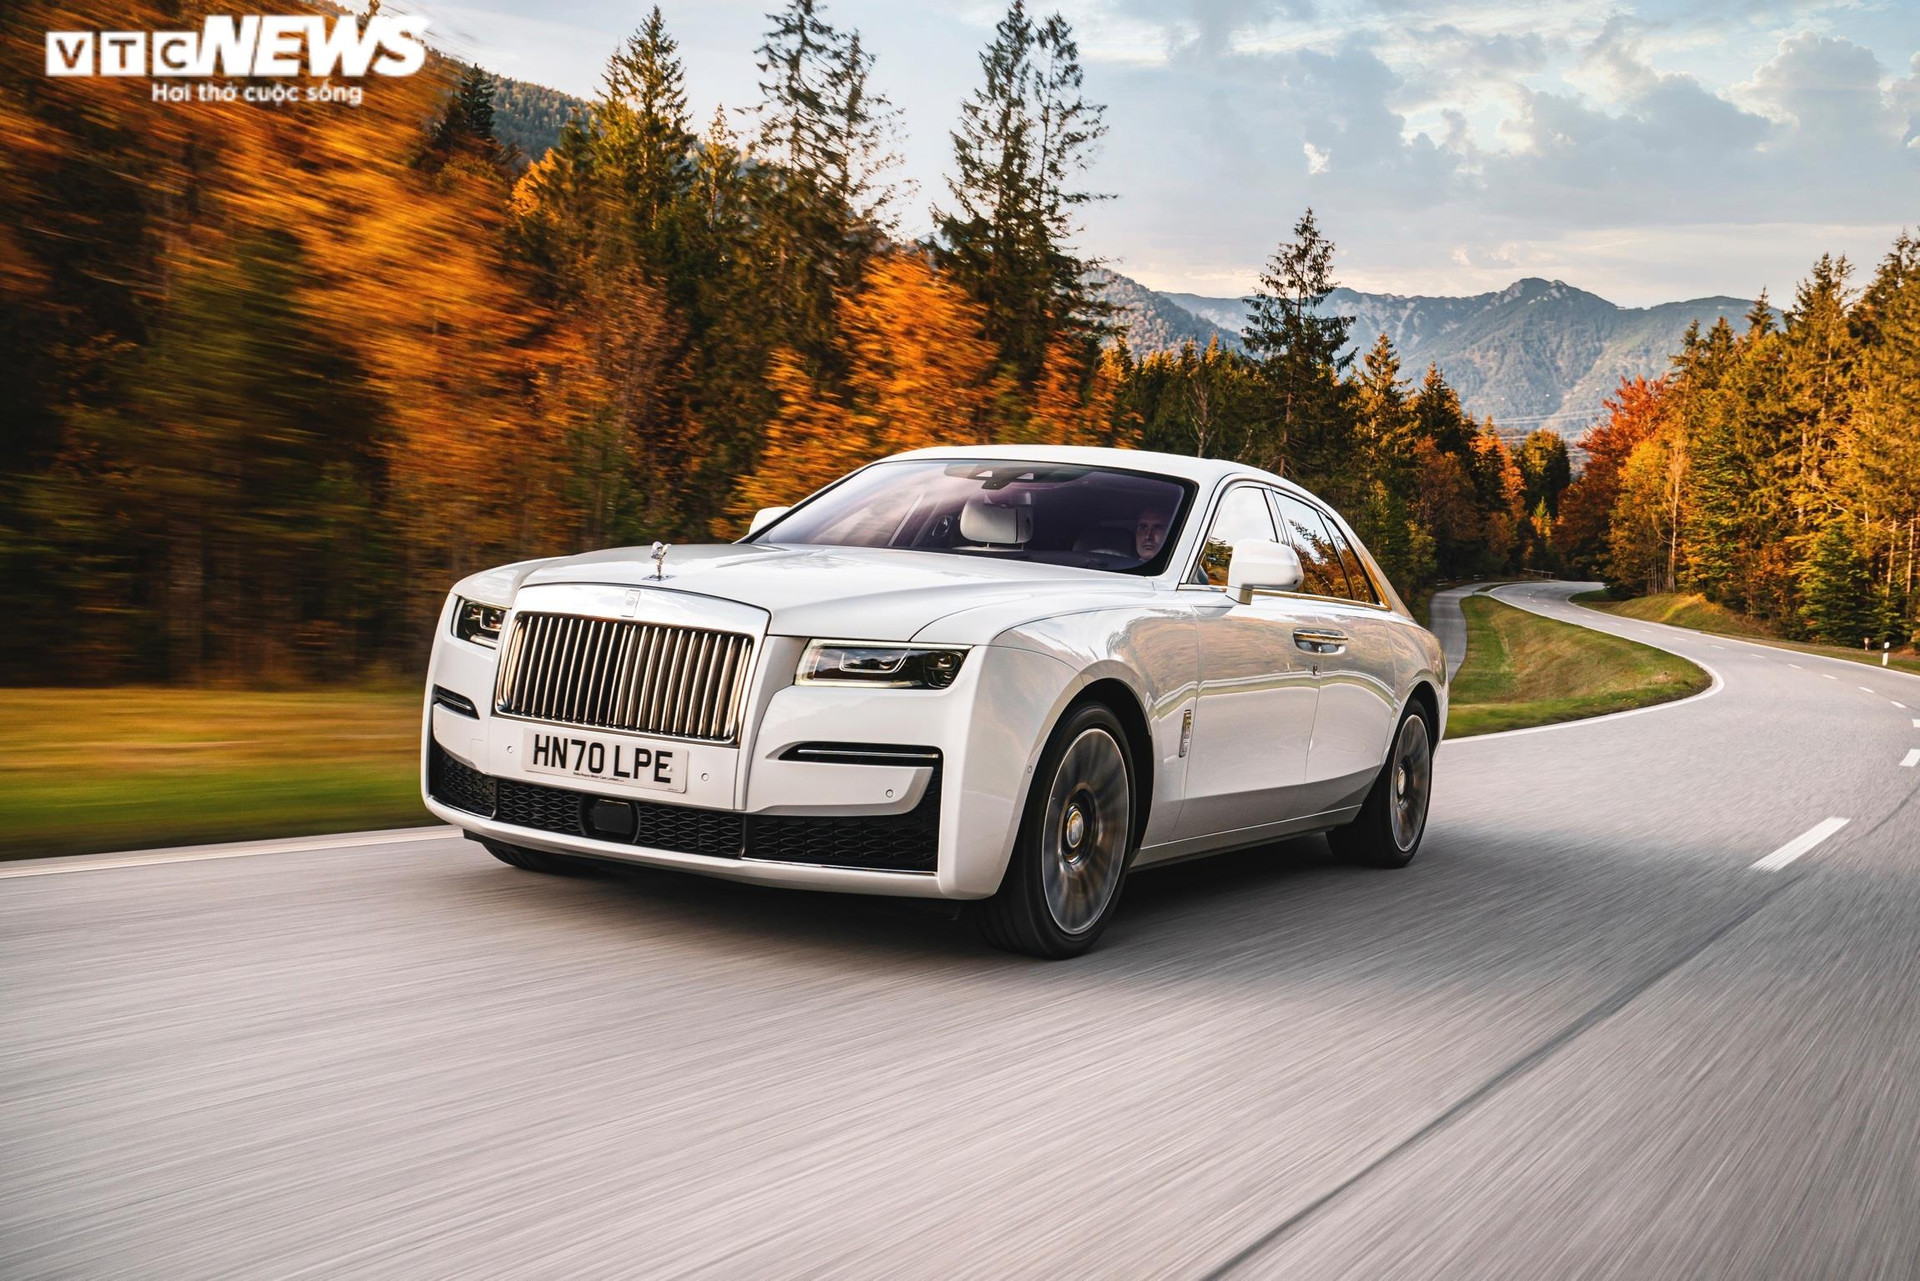 Siêu xe Rolls-Royce New Ghost và bộ ảnh chu du khắp thế giới - 9